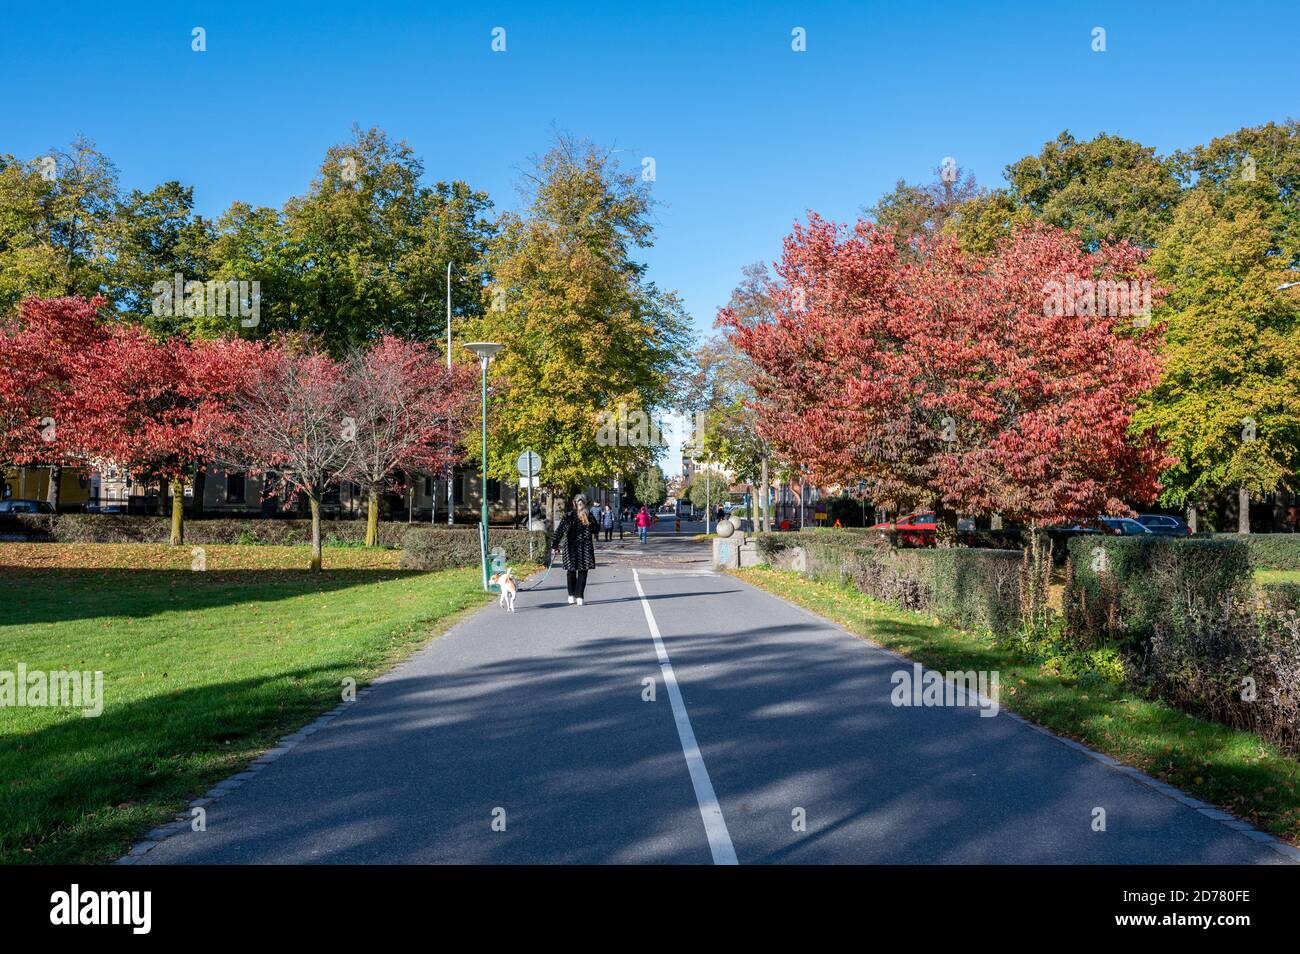 Marche en chiens un jour d'automne ensoleillé dans le parc de la ville de Vasaparken à Norrkoping, en Suède, à la mi-octobre 2020 Banque D'Images